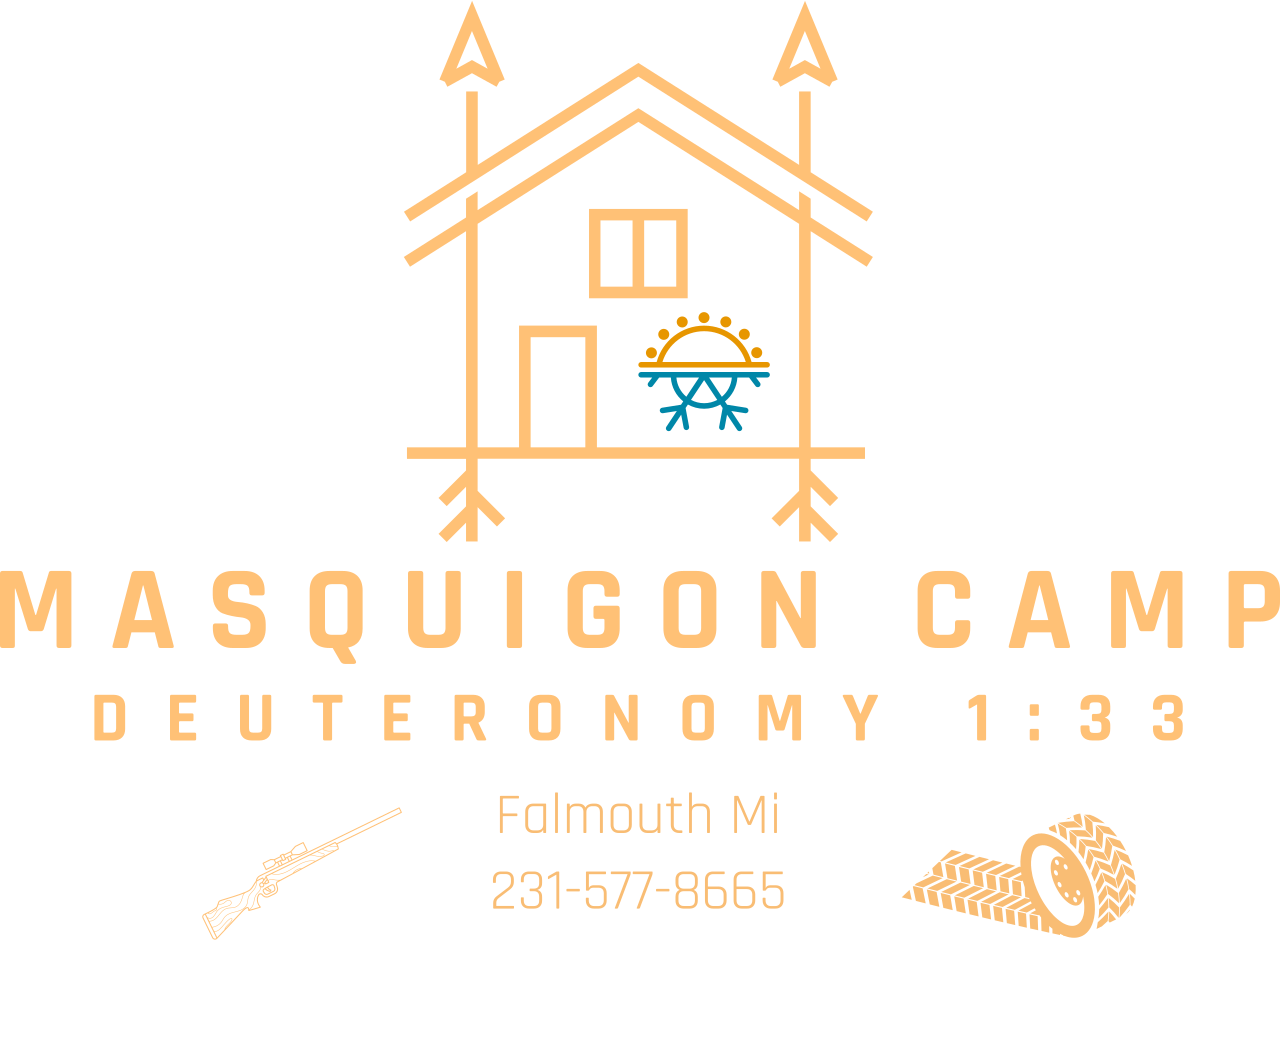 Masquigon Camp's logo